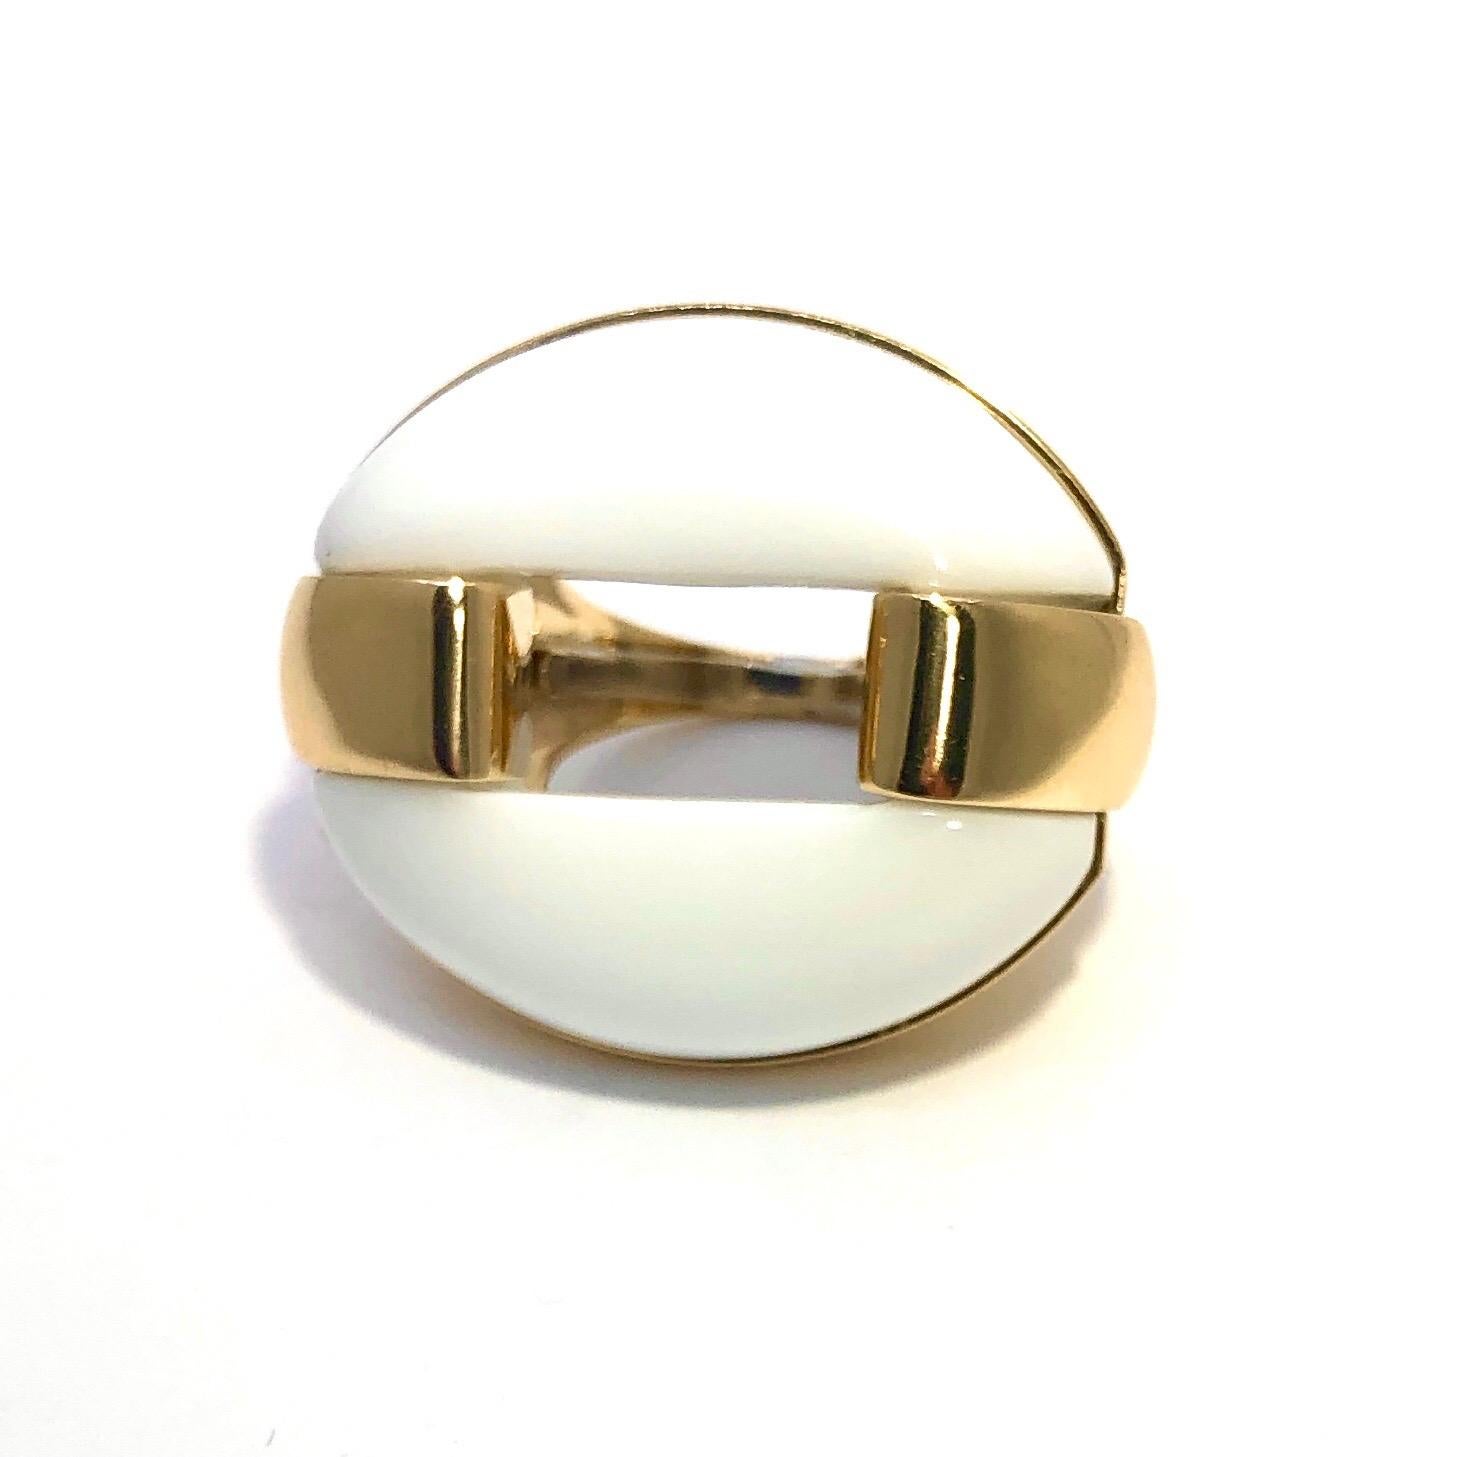 Dieser auffällige und eindrucksvolle Ring ist aus 18 Karat Gelbgold gefertigt, auf dem ein ovaler weißer Achat sitzt,  mit den Maßen 1 3/16 Zoll mal 1 1/16 Zoll. Die stilvollen Ringschultern umschließen das weiße Achat-Oval auf jeder Seite und